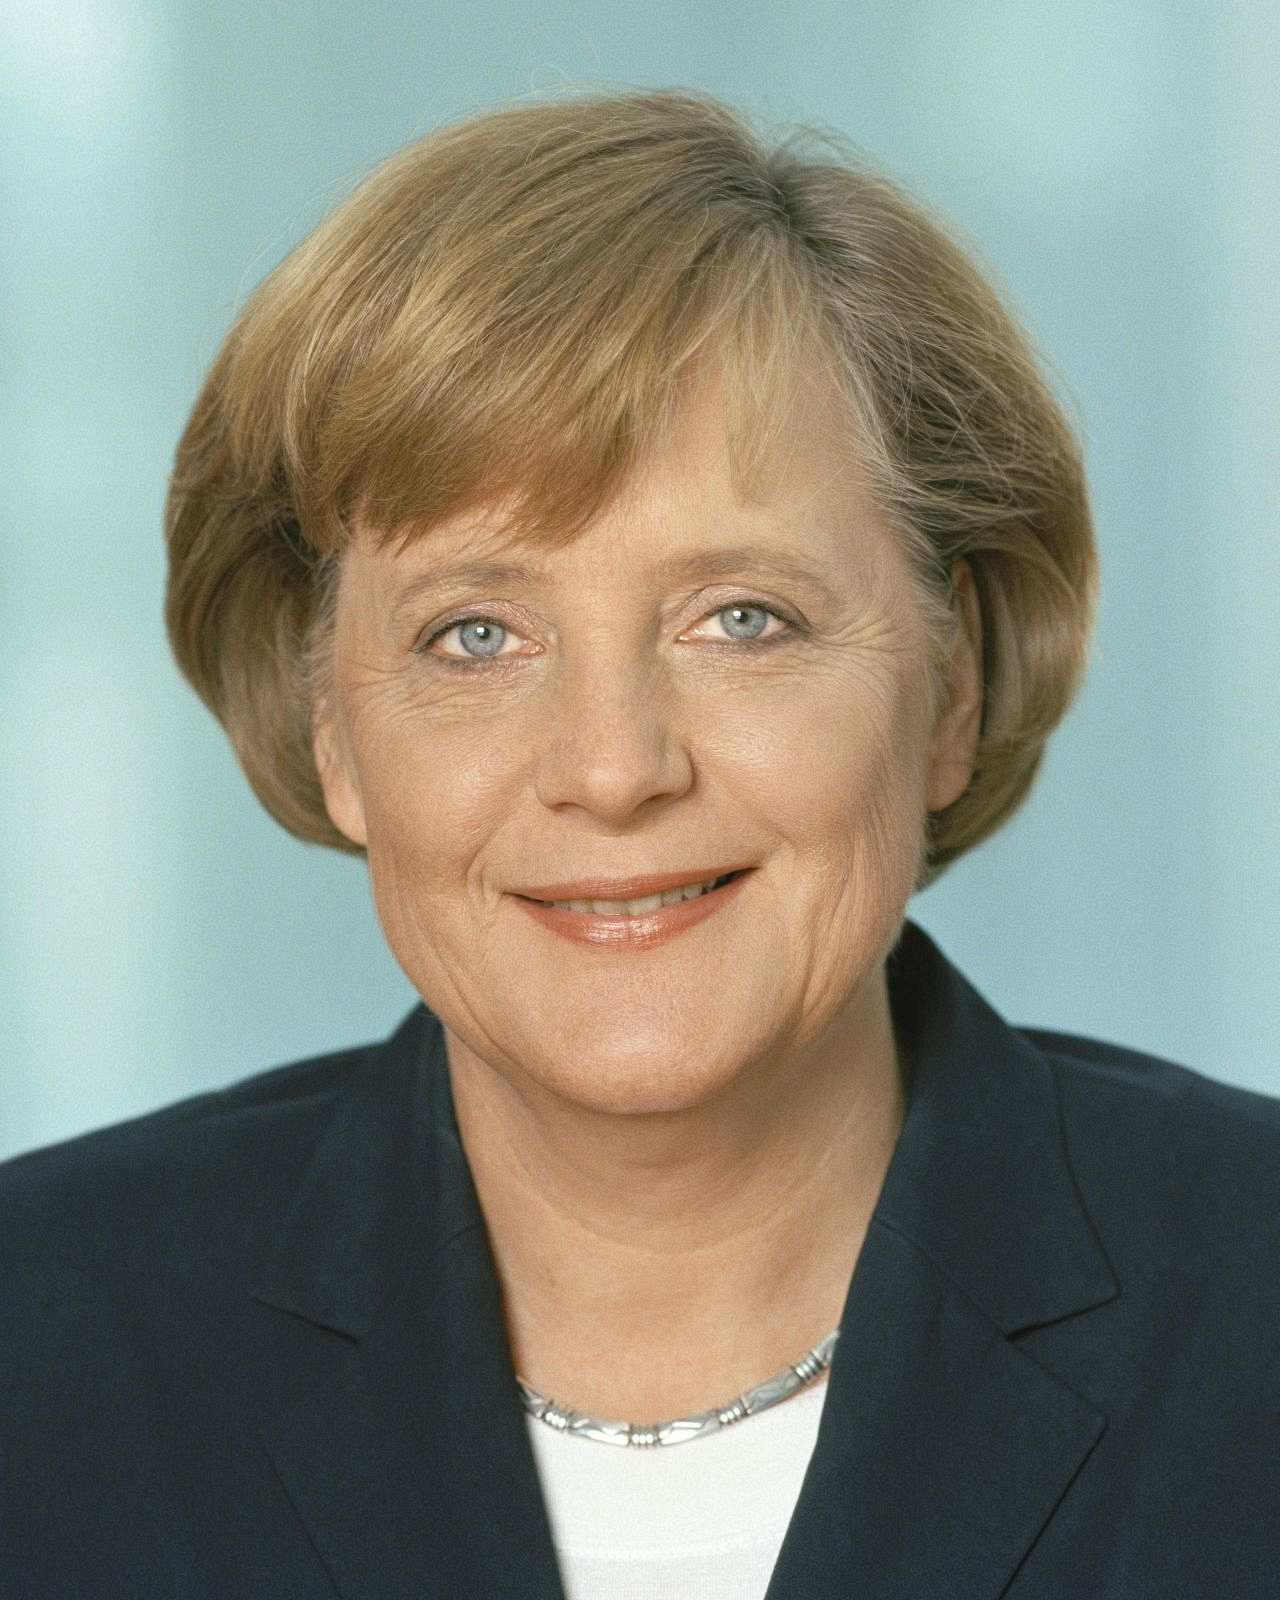 Offizielles Porträt von Angela Merkel, Bundeskanzlerin der Bundesrepublik Deutschland (seit 2005).